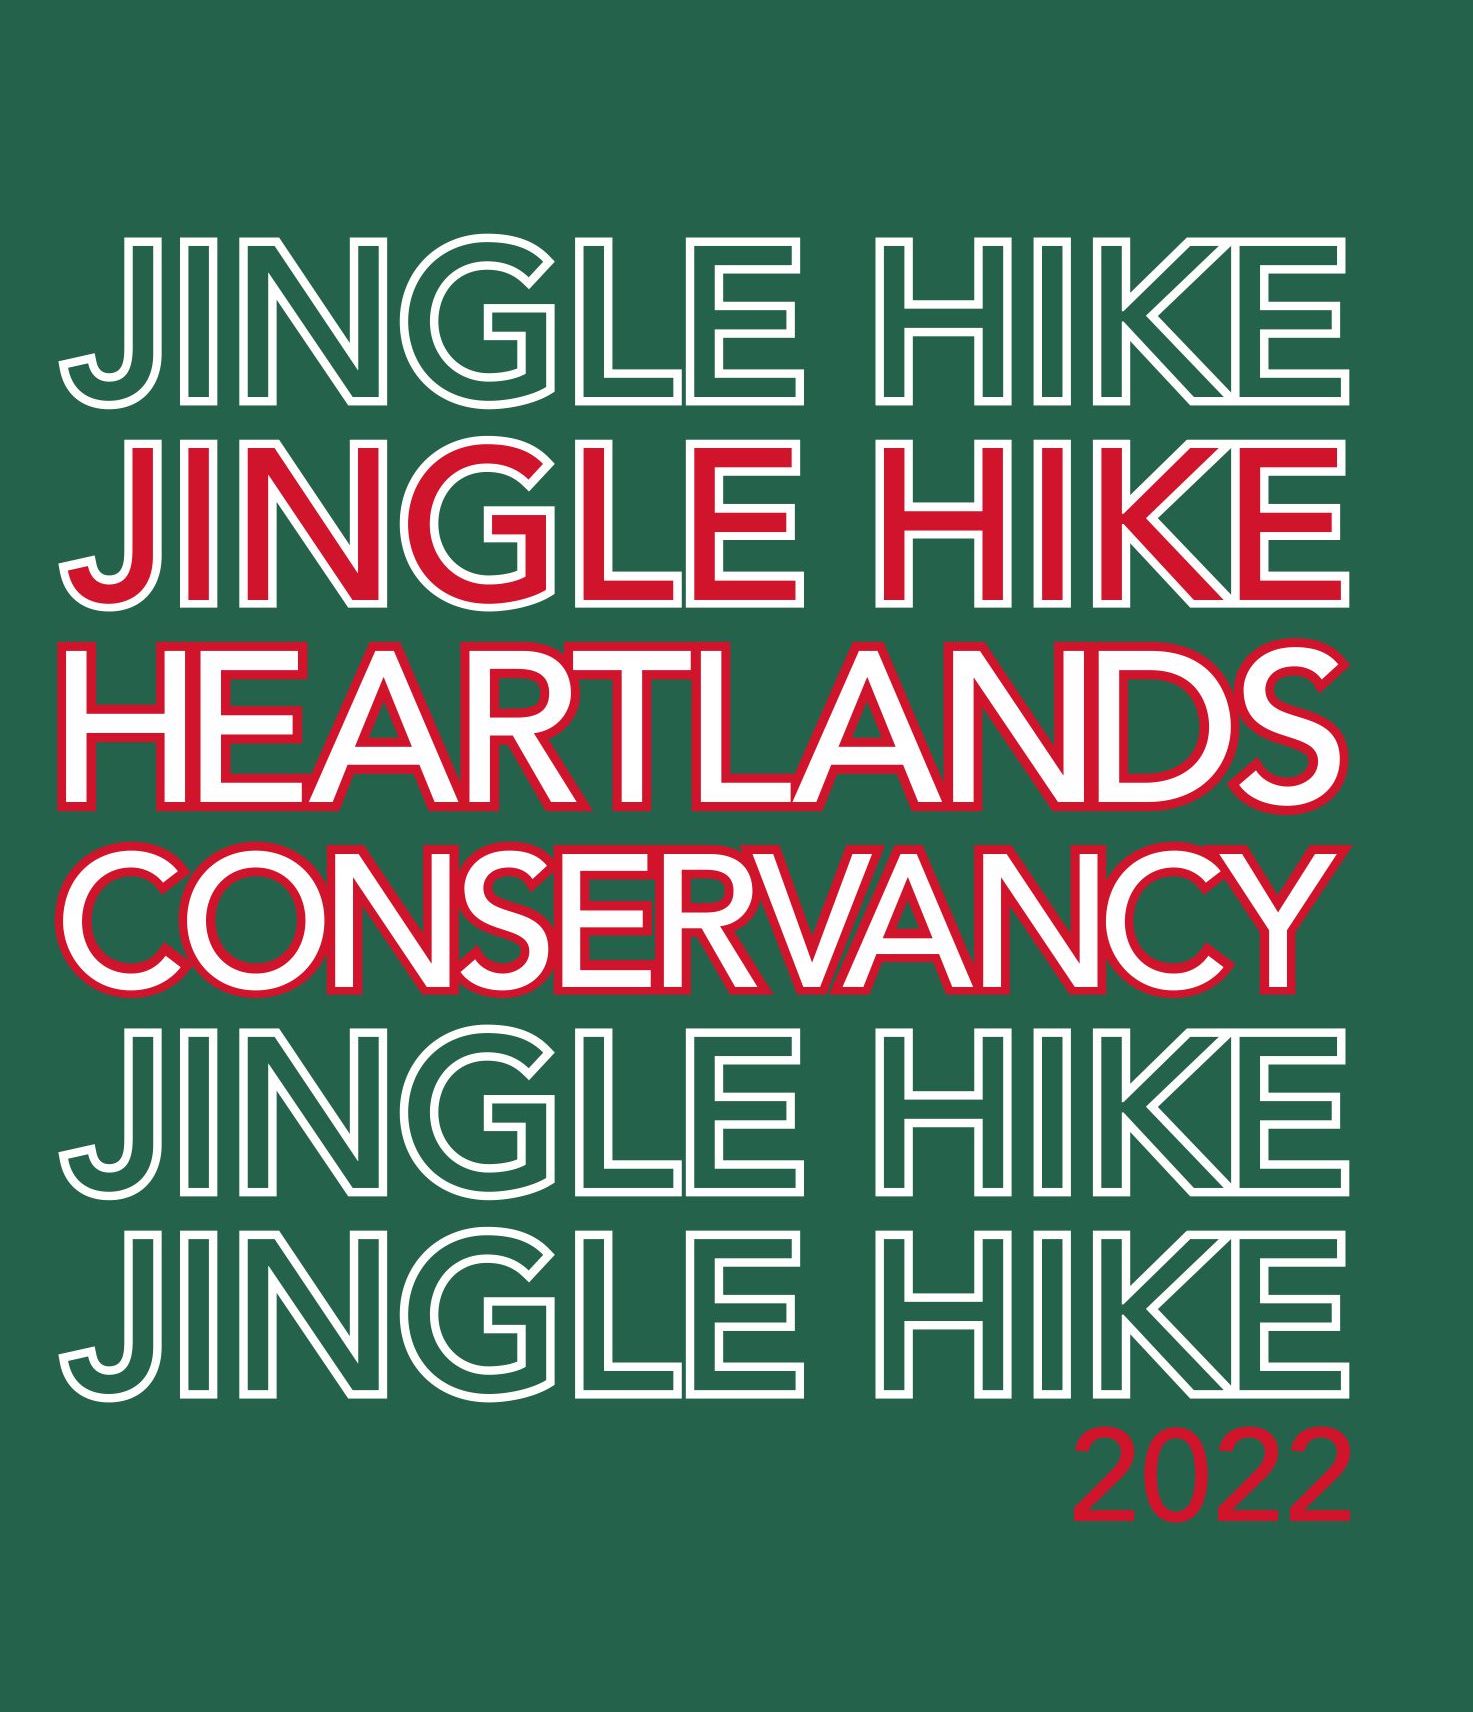 Jingle Hike Challenge 2022!